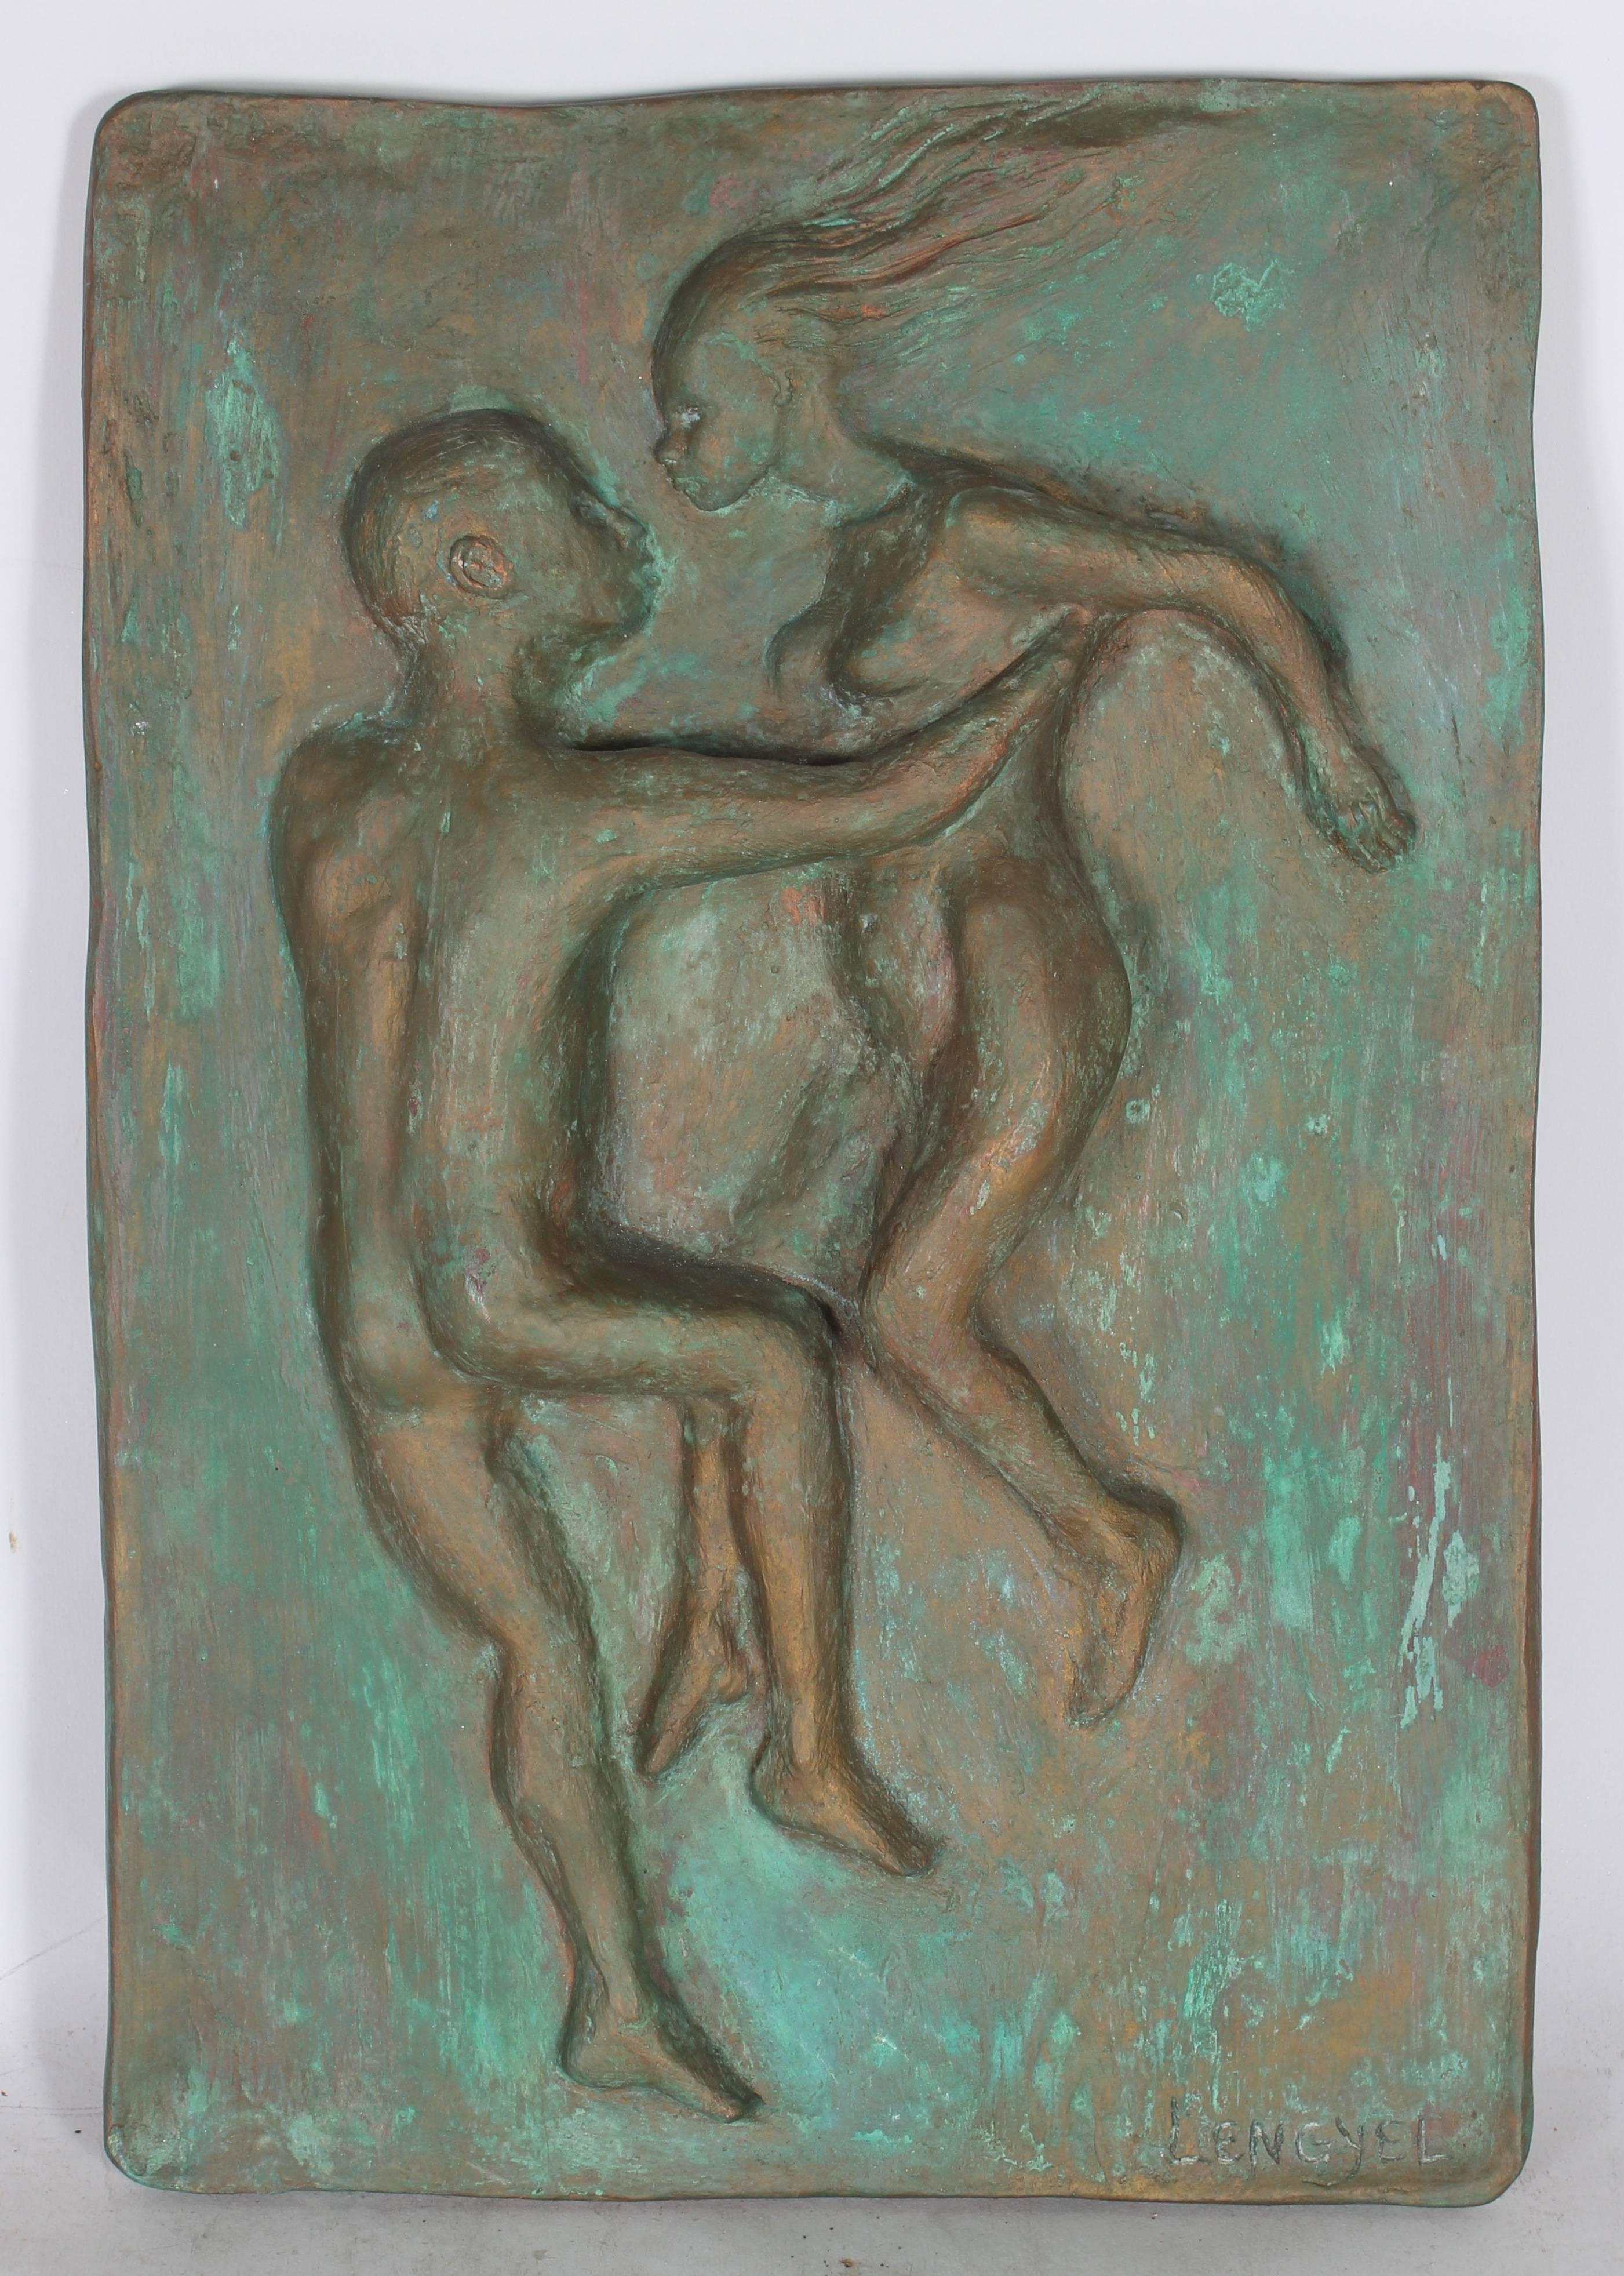 Laura Lengyel Nude Sculpture - "Celestial Couple I" Figurative Plaster Relief Sculpture, 1969